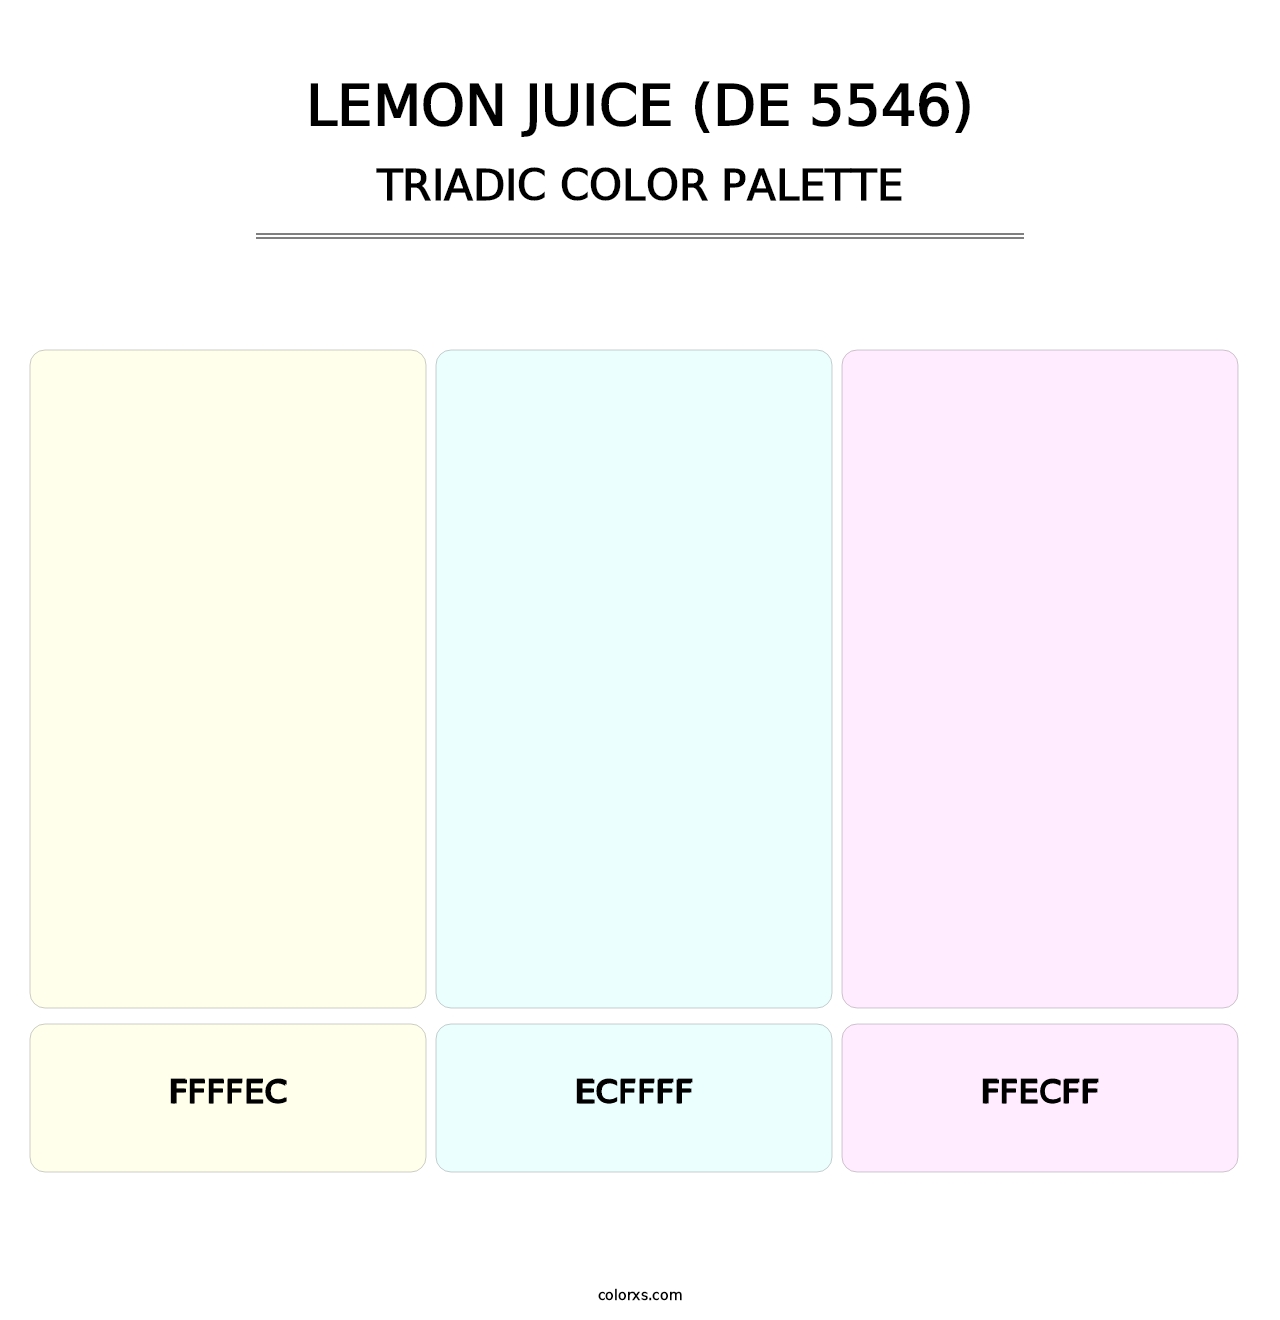 Lemon Juice (DE 5546) - Triadic Color Palette